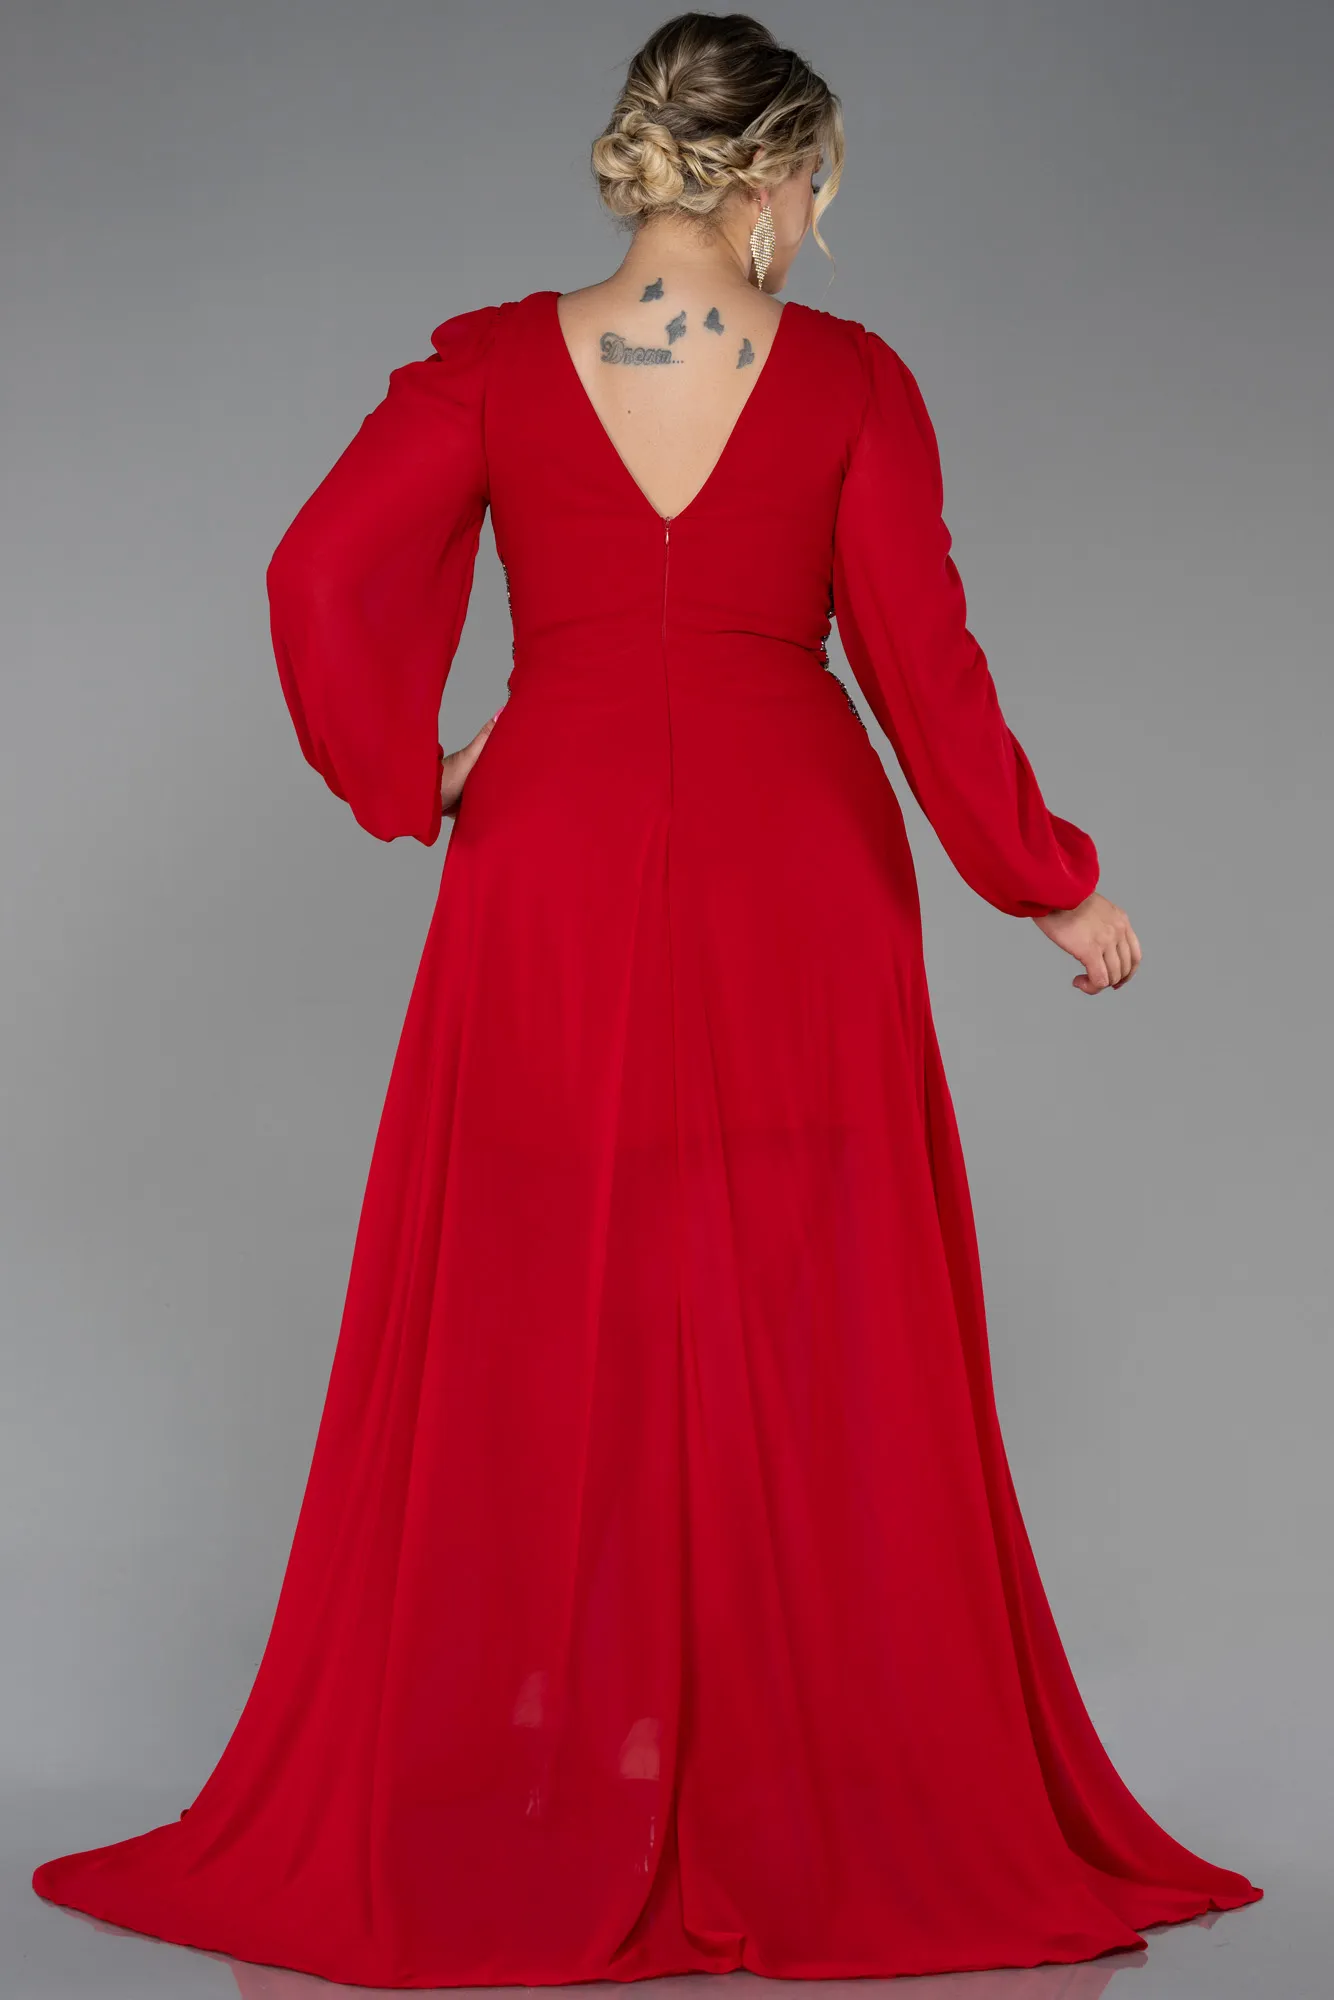 Red-Long Chiffon Plus Size Evening Dress ABU3256